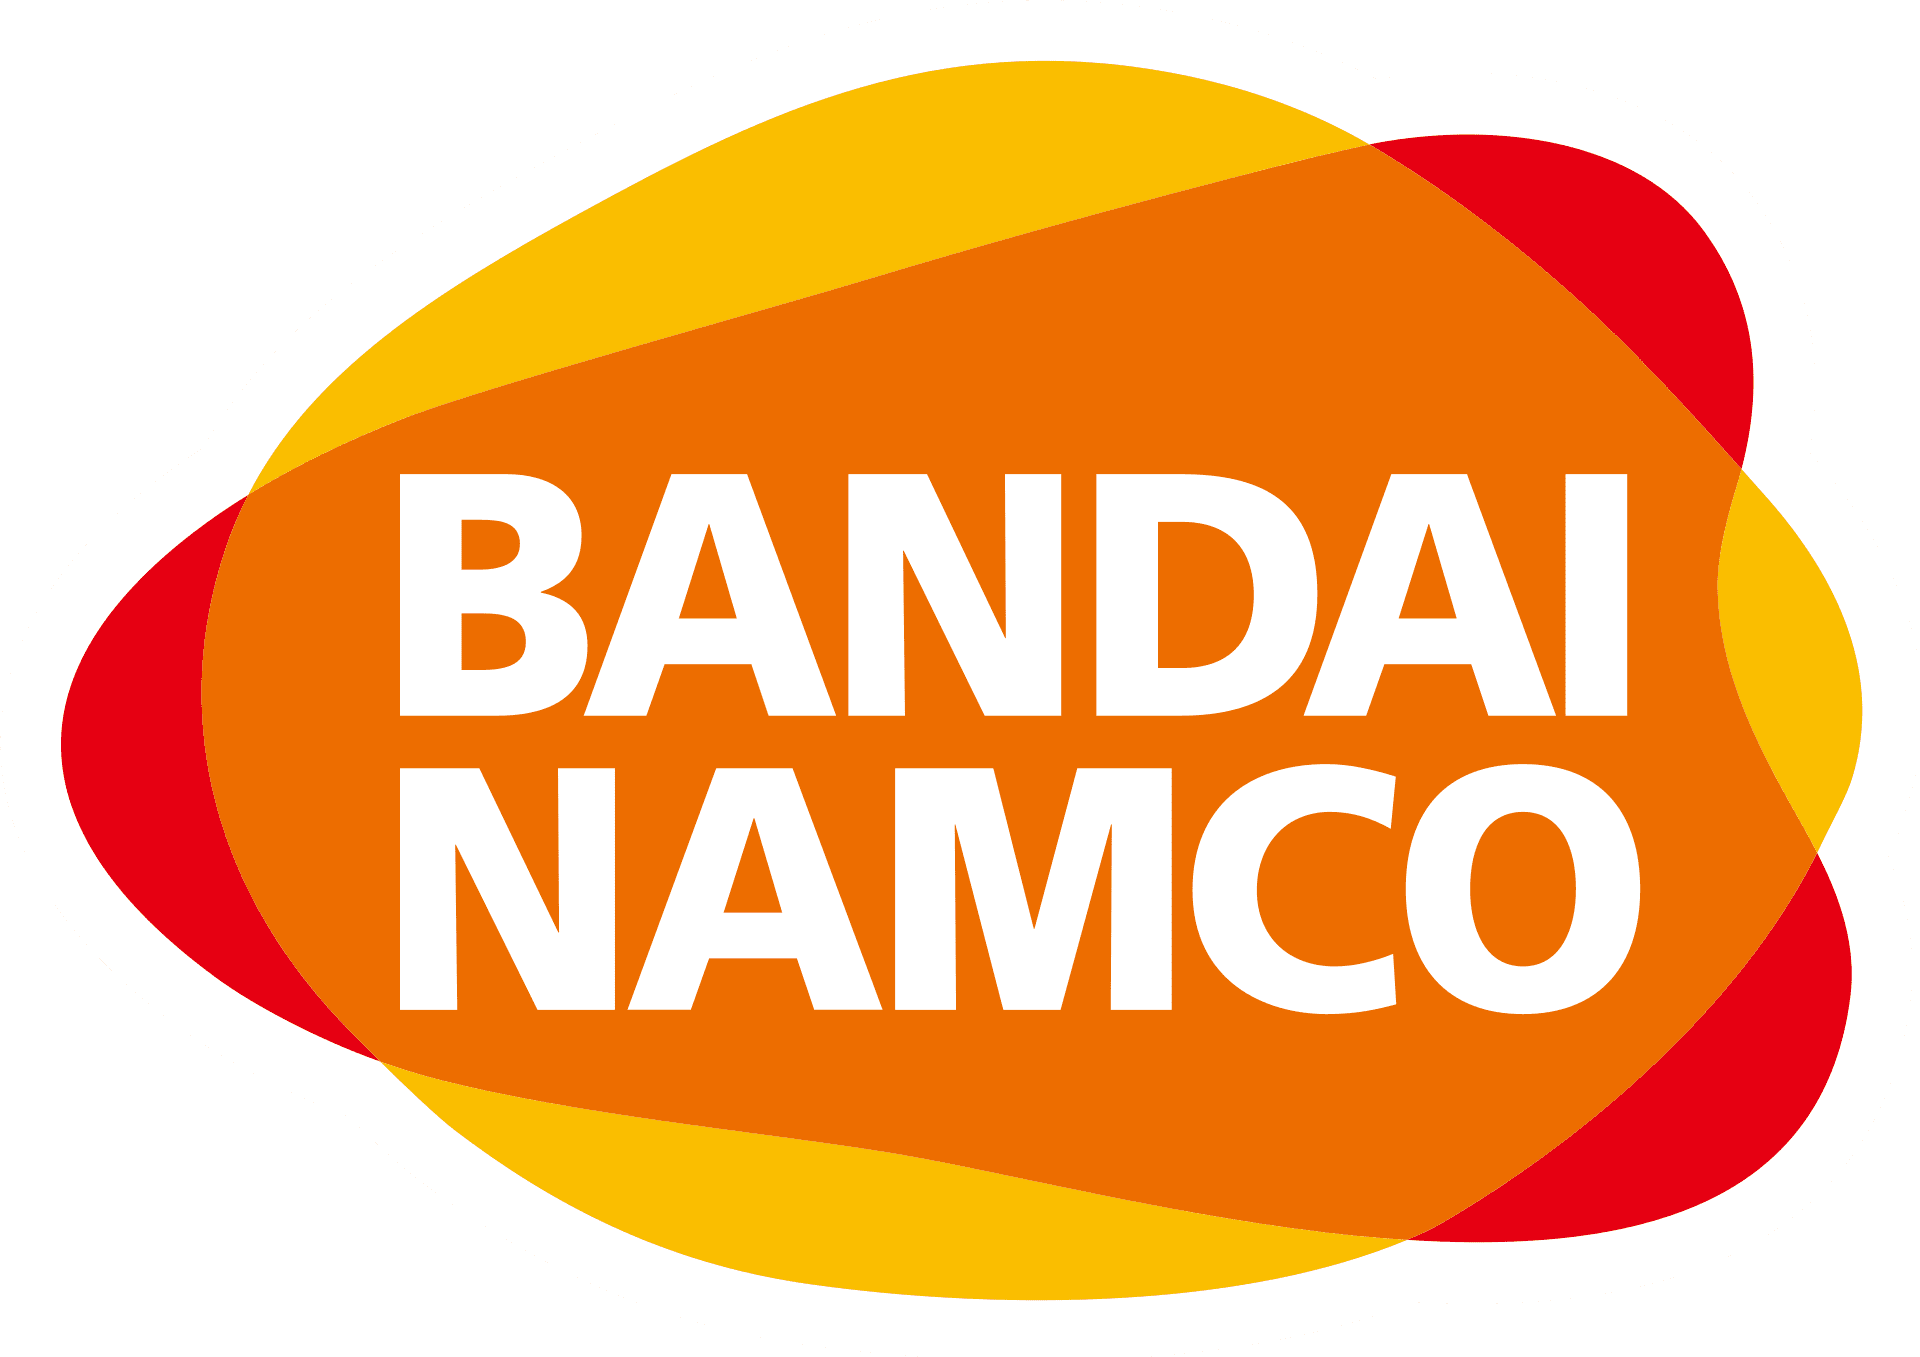 Contact Of Bandai Namco Customer Service